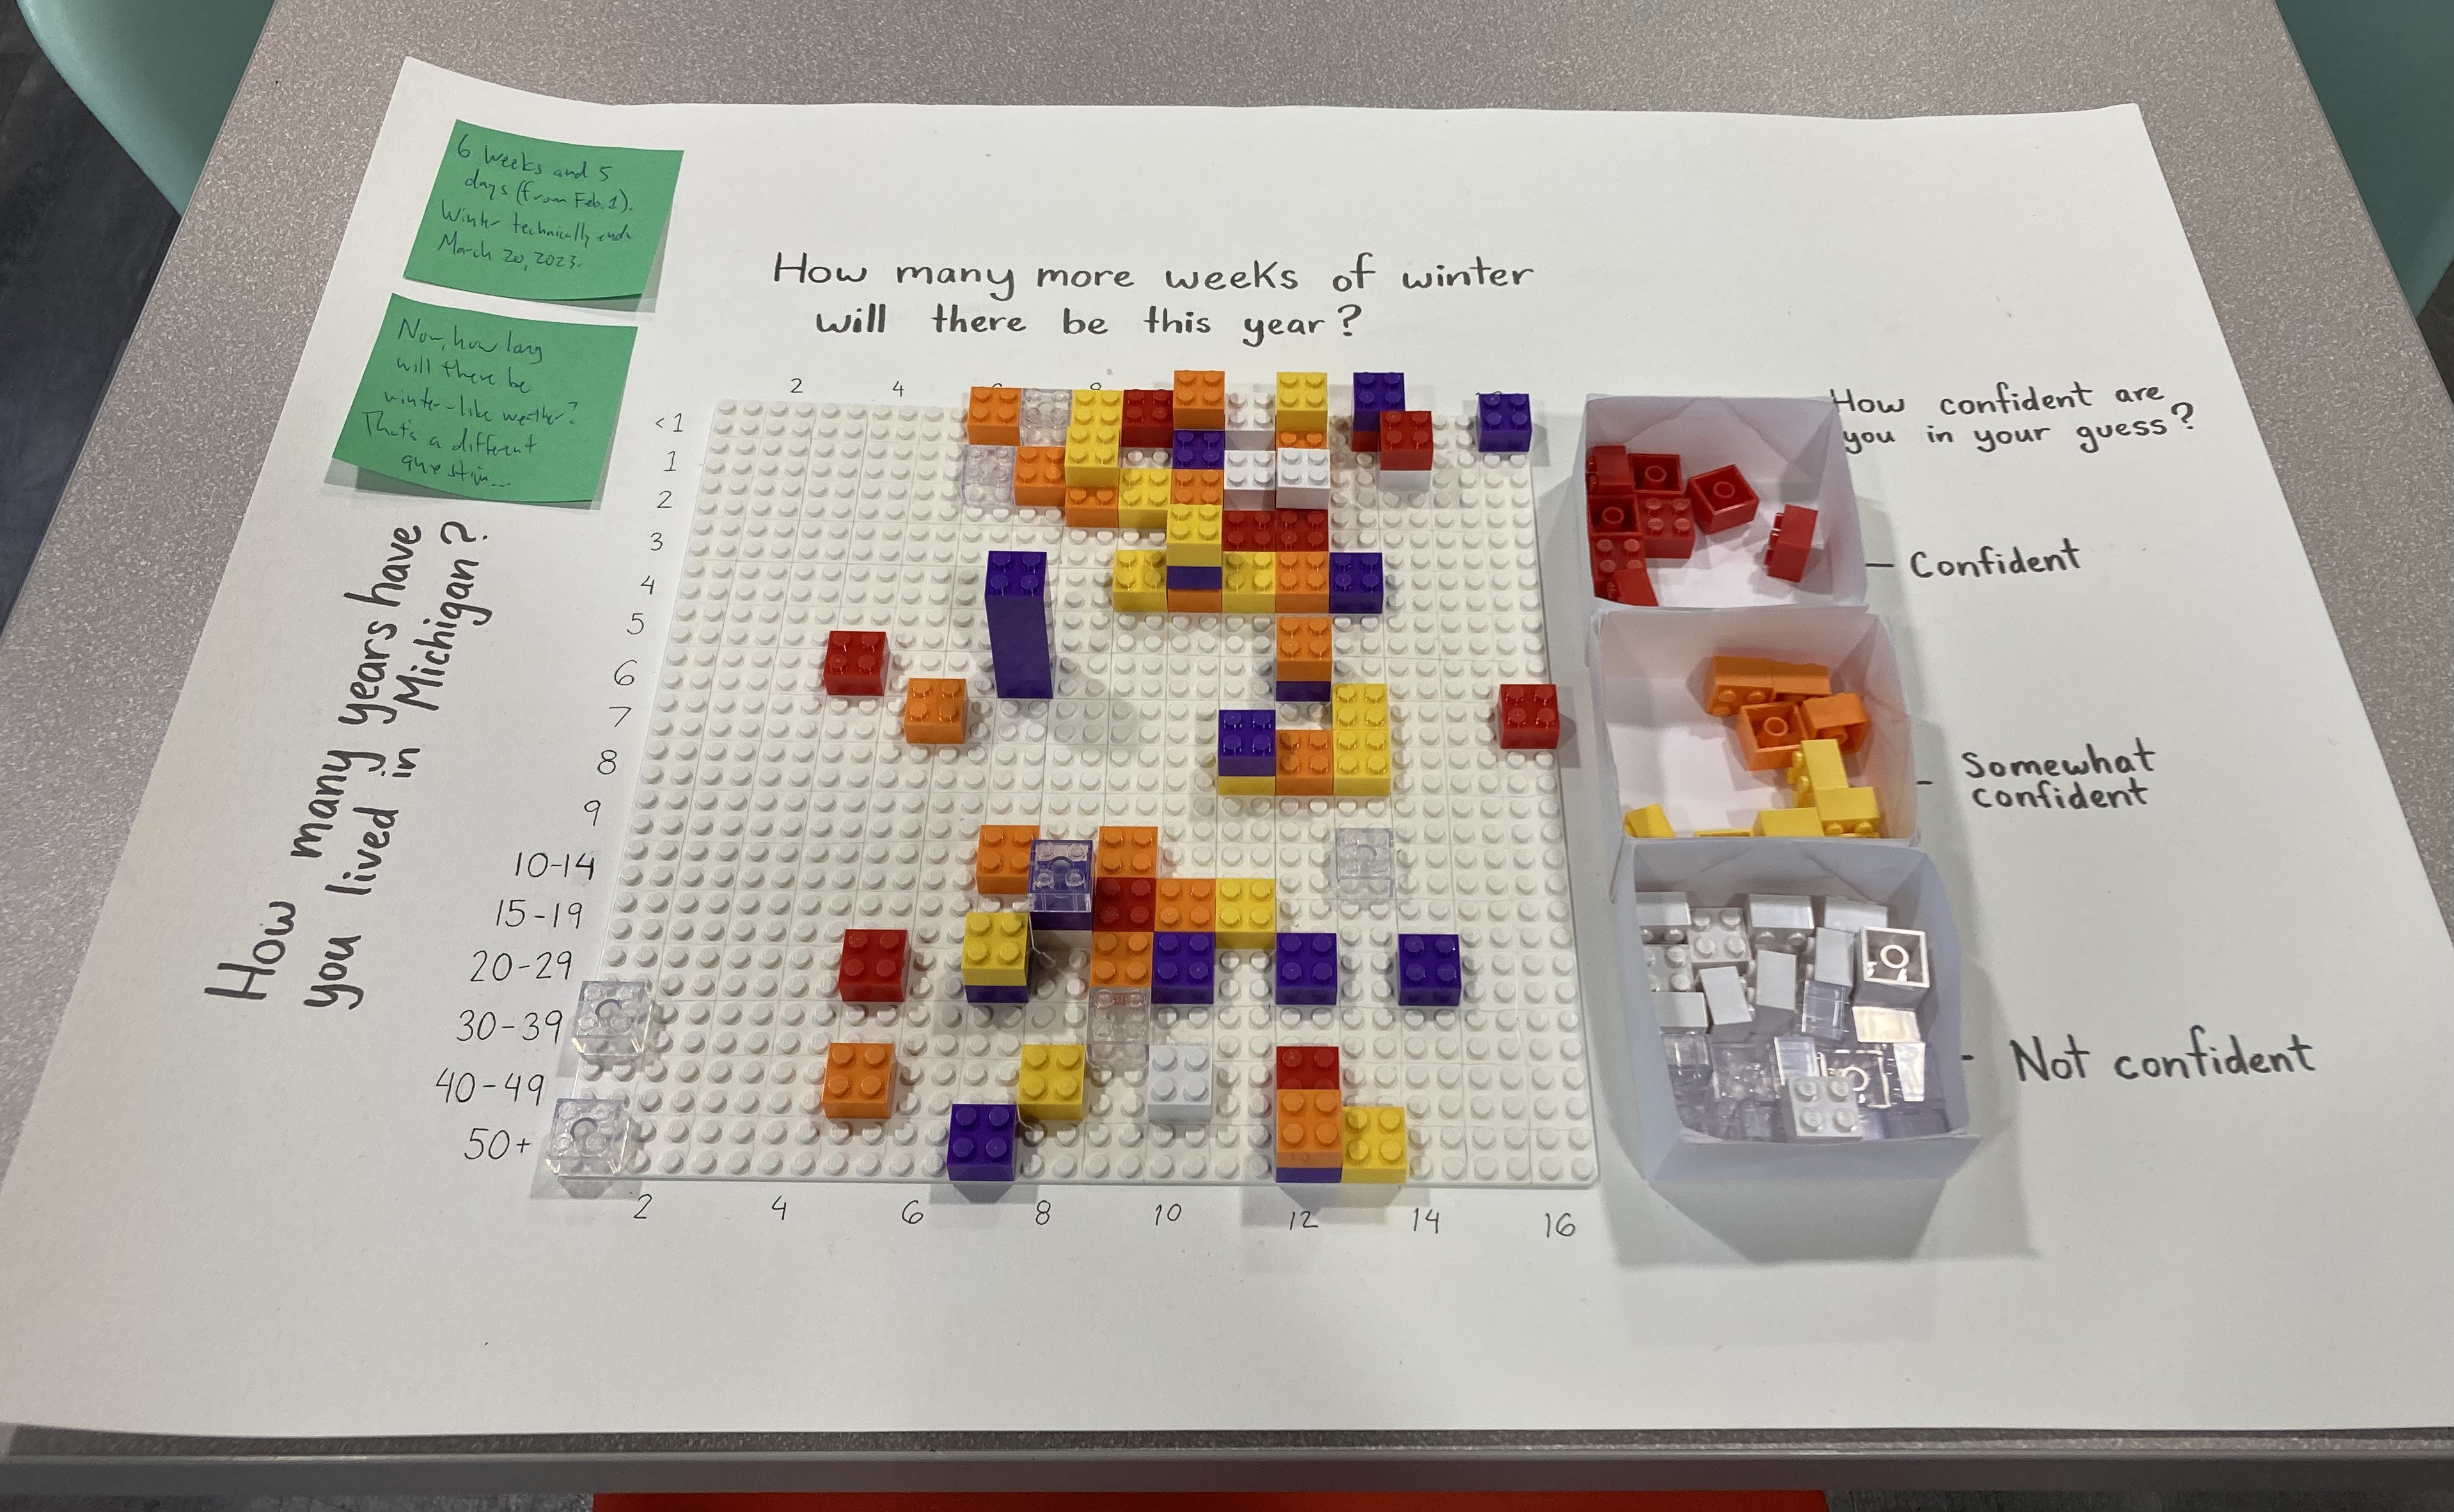 LEGO data visualization